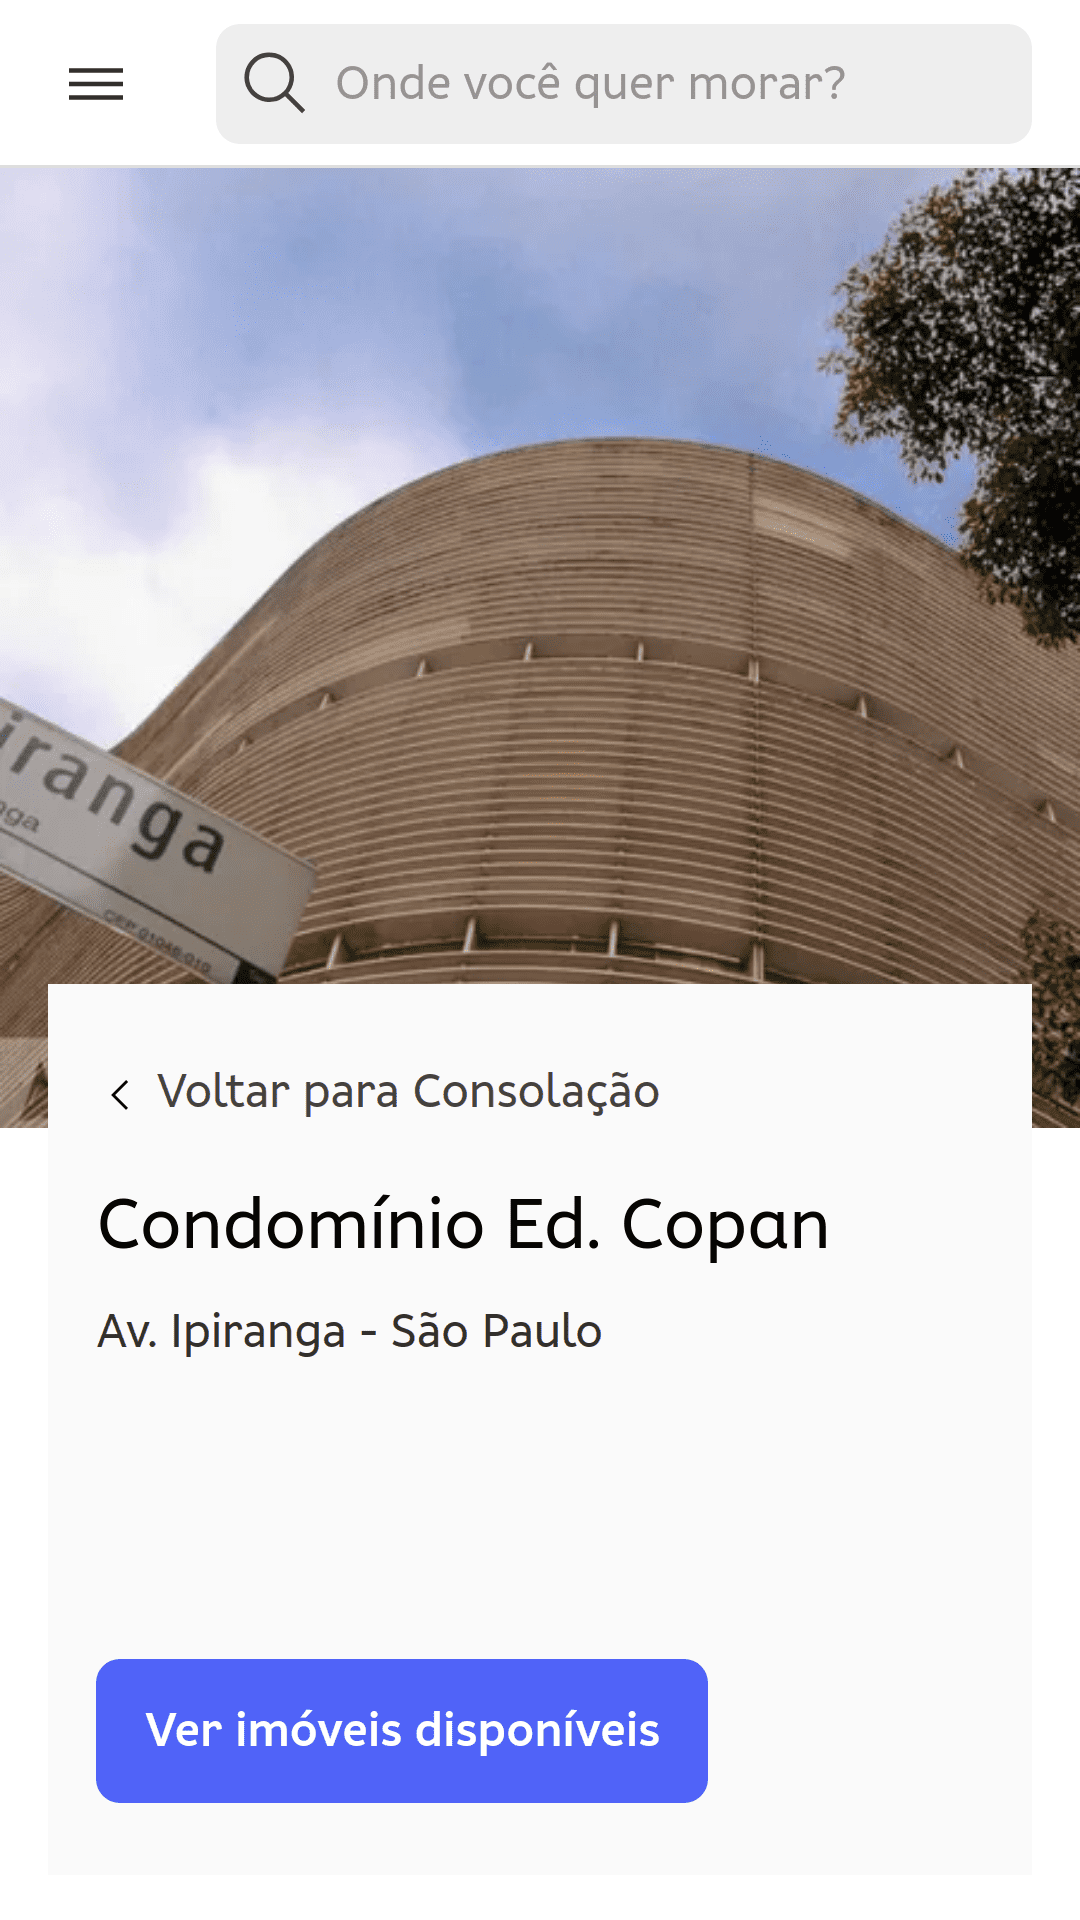 Edifício Copan（巴西圣保罗）的公寓页面。从地面拍摄的照片显示了建筑物结构的曲线。